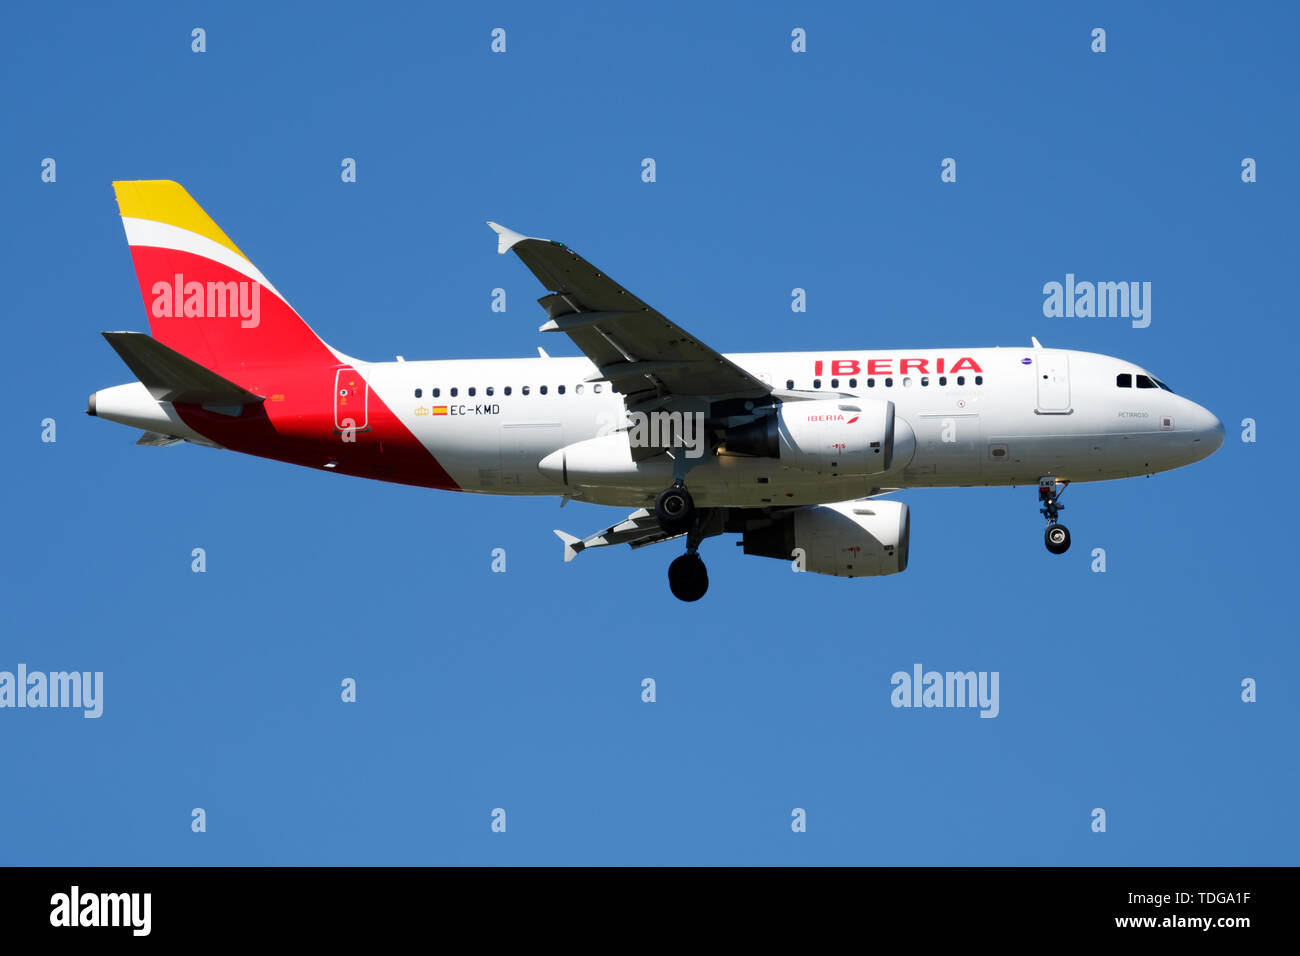 MADRID / Spagna - 2 Maggio 2016: Iberia Airlines Airbus A319 CE-kmd aereo passeggeri atterraggio all' Aeroporto Barajas di Madrid Foto Stock